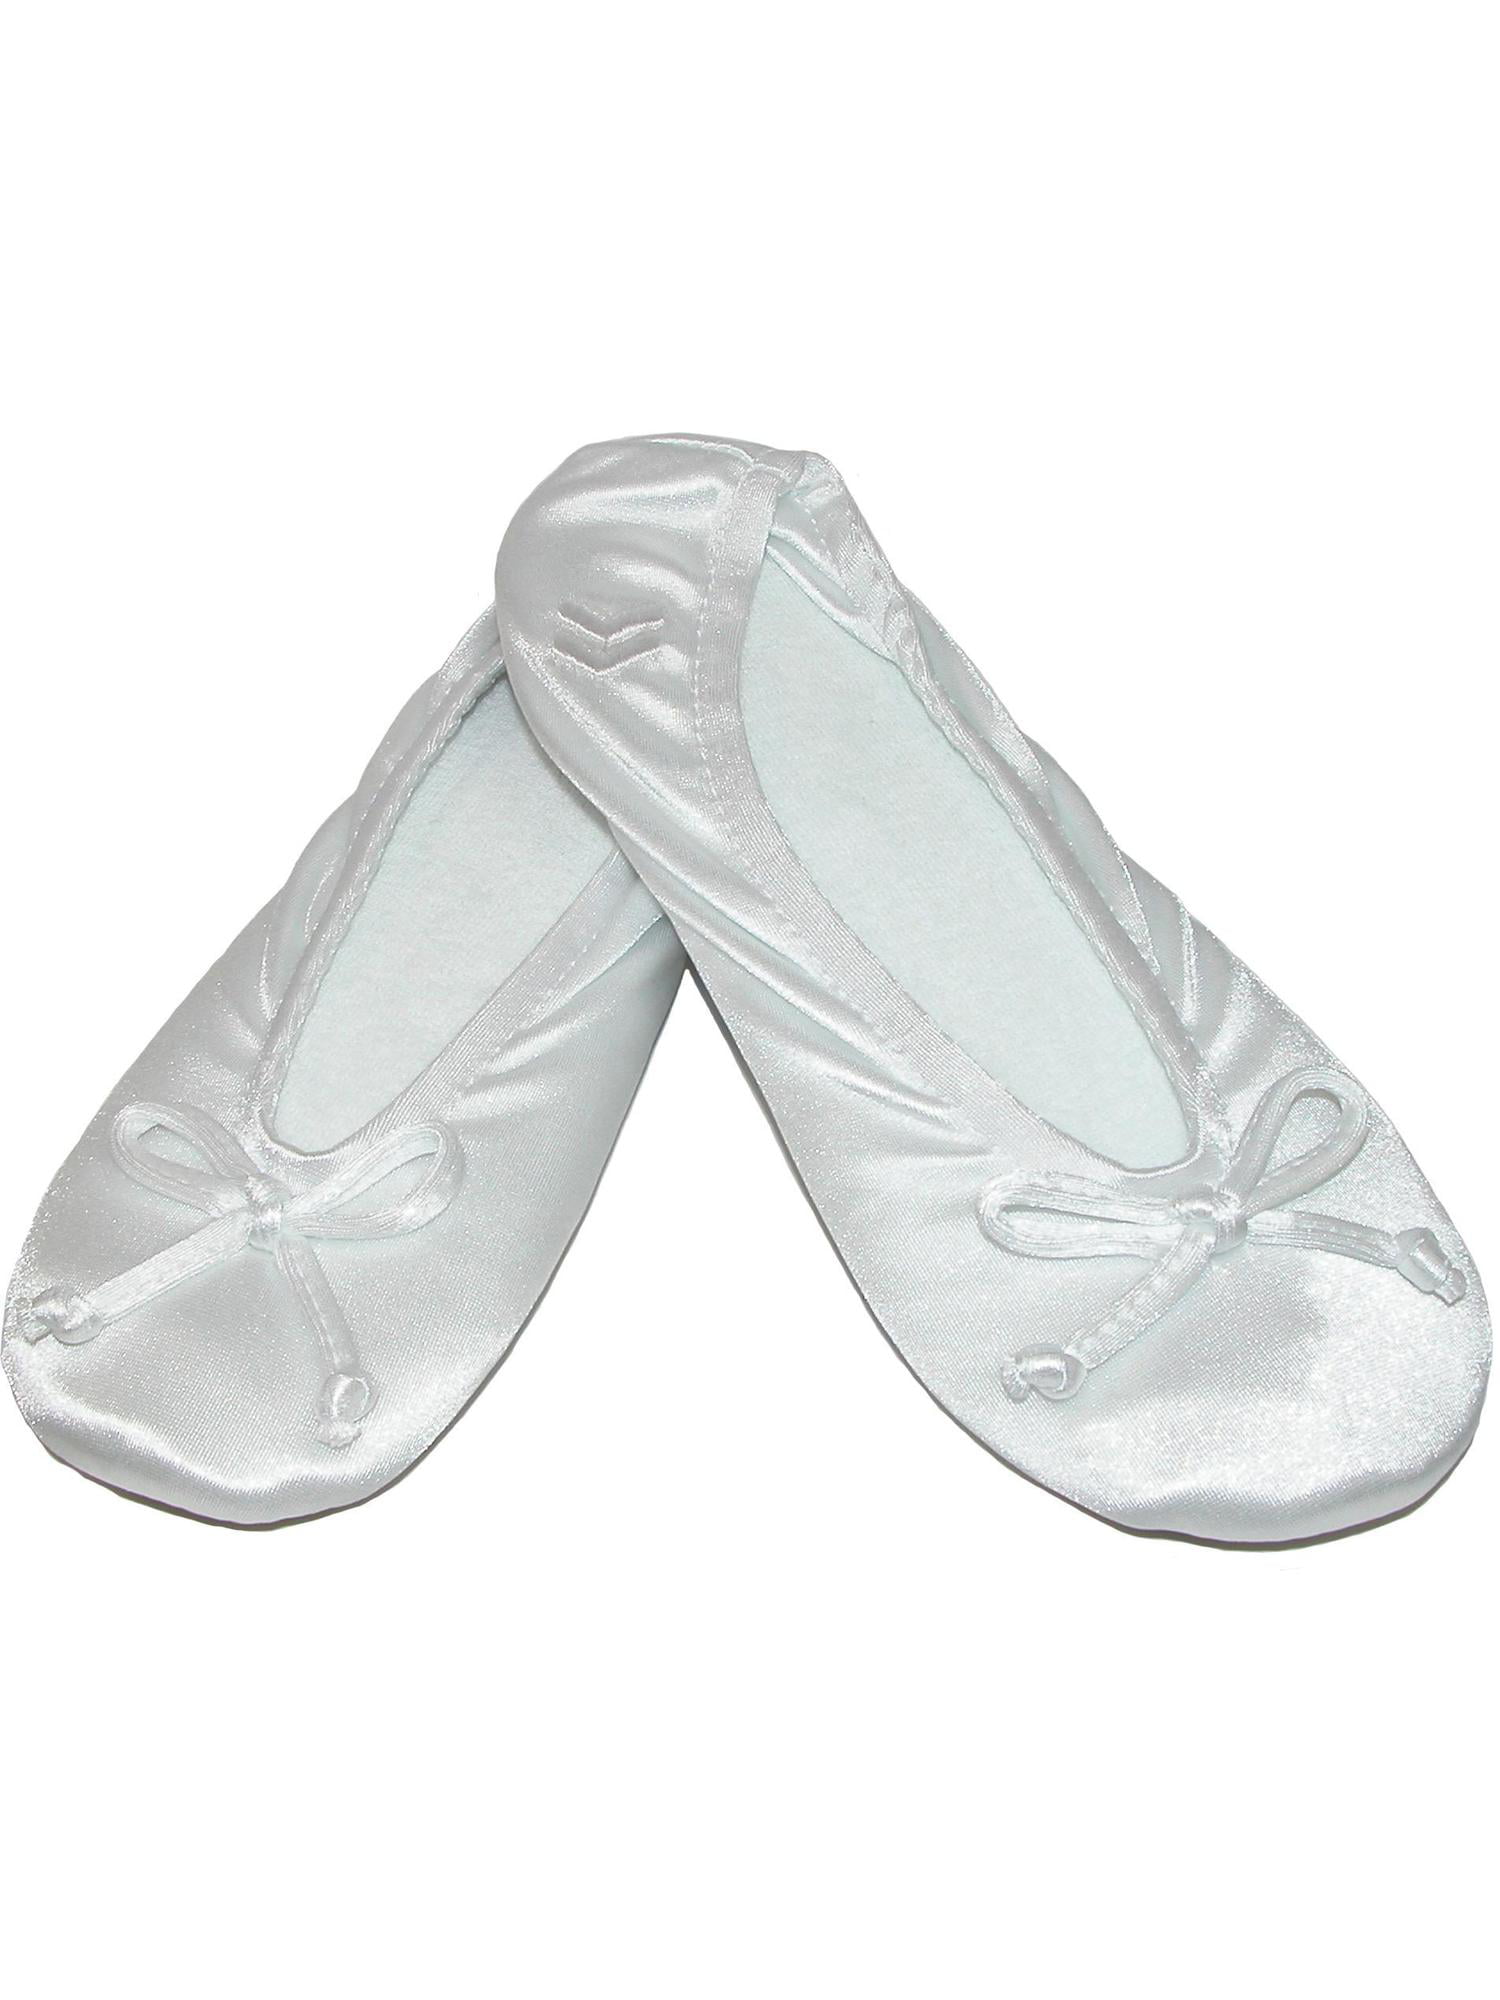 white ballerina slippers